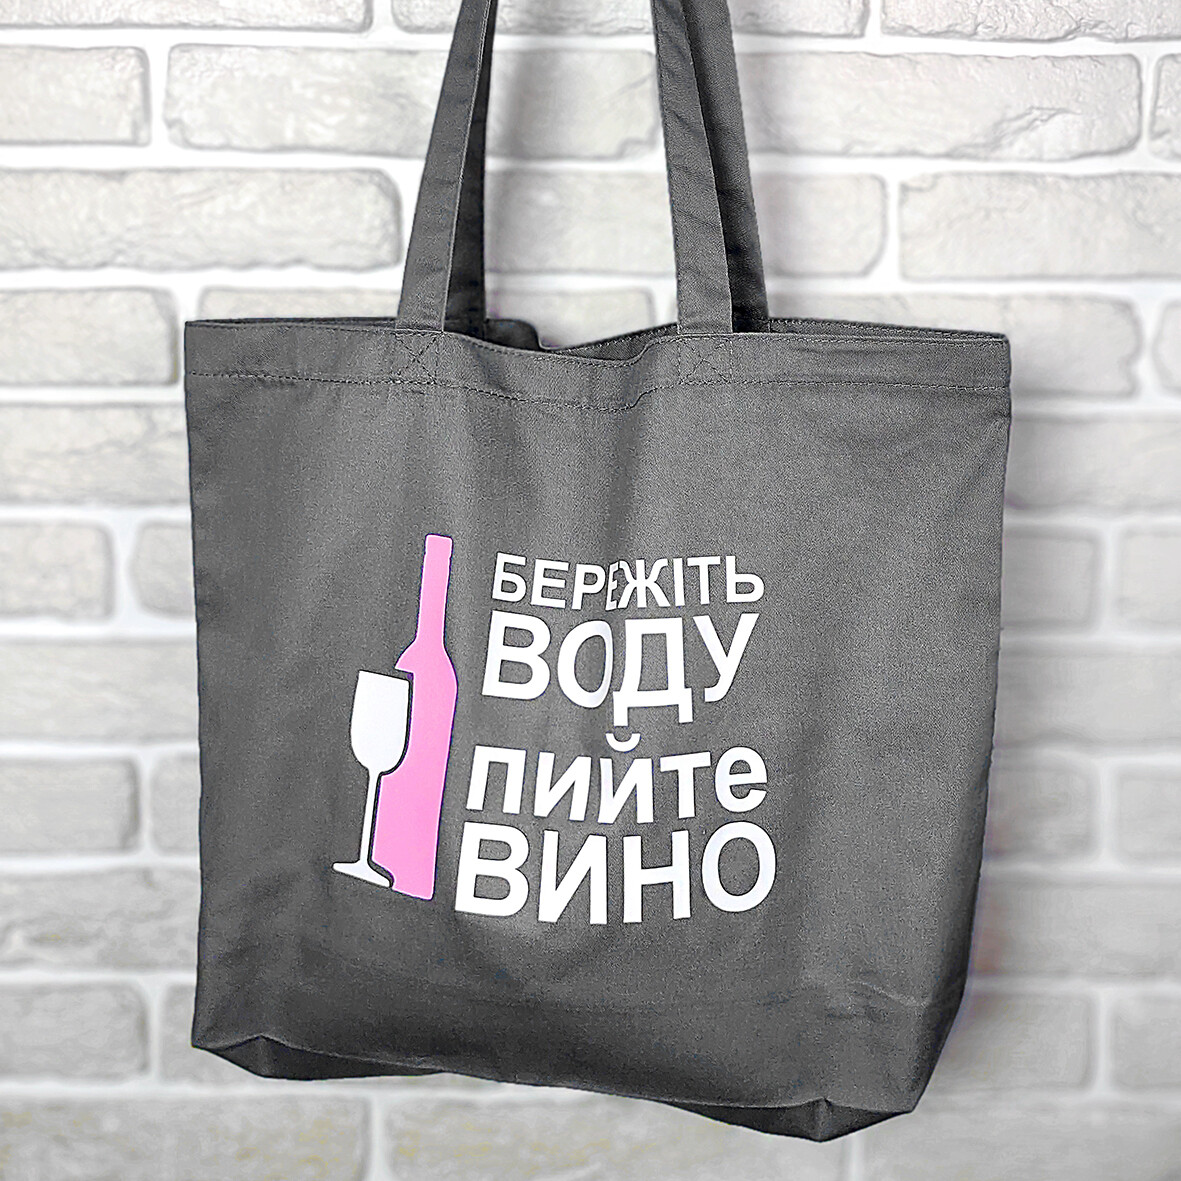 Еко сумка Market MAXI (шопер) Бережіть воду, пийте вино